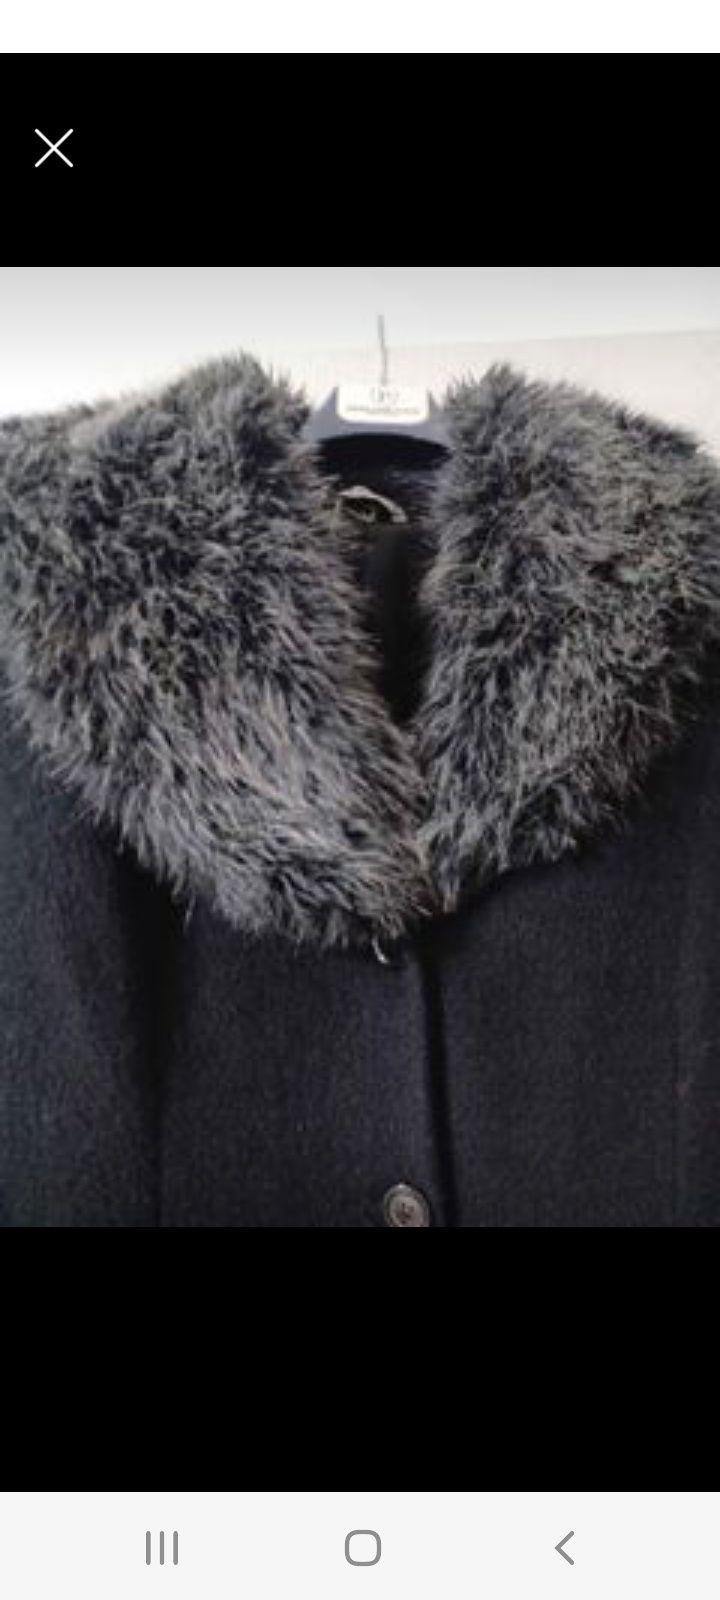 Дълго дамско черно палто  размер L-XL